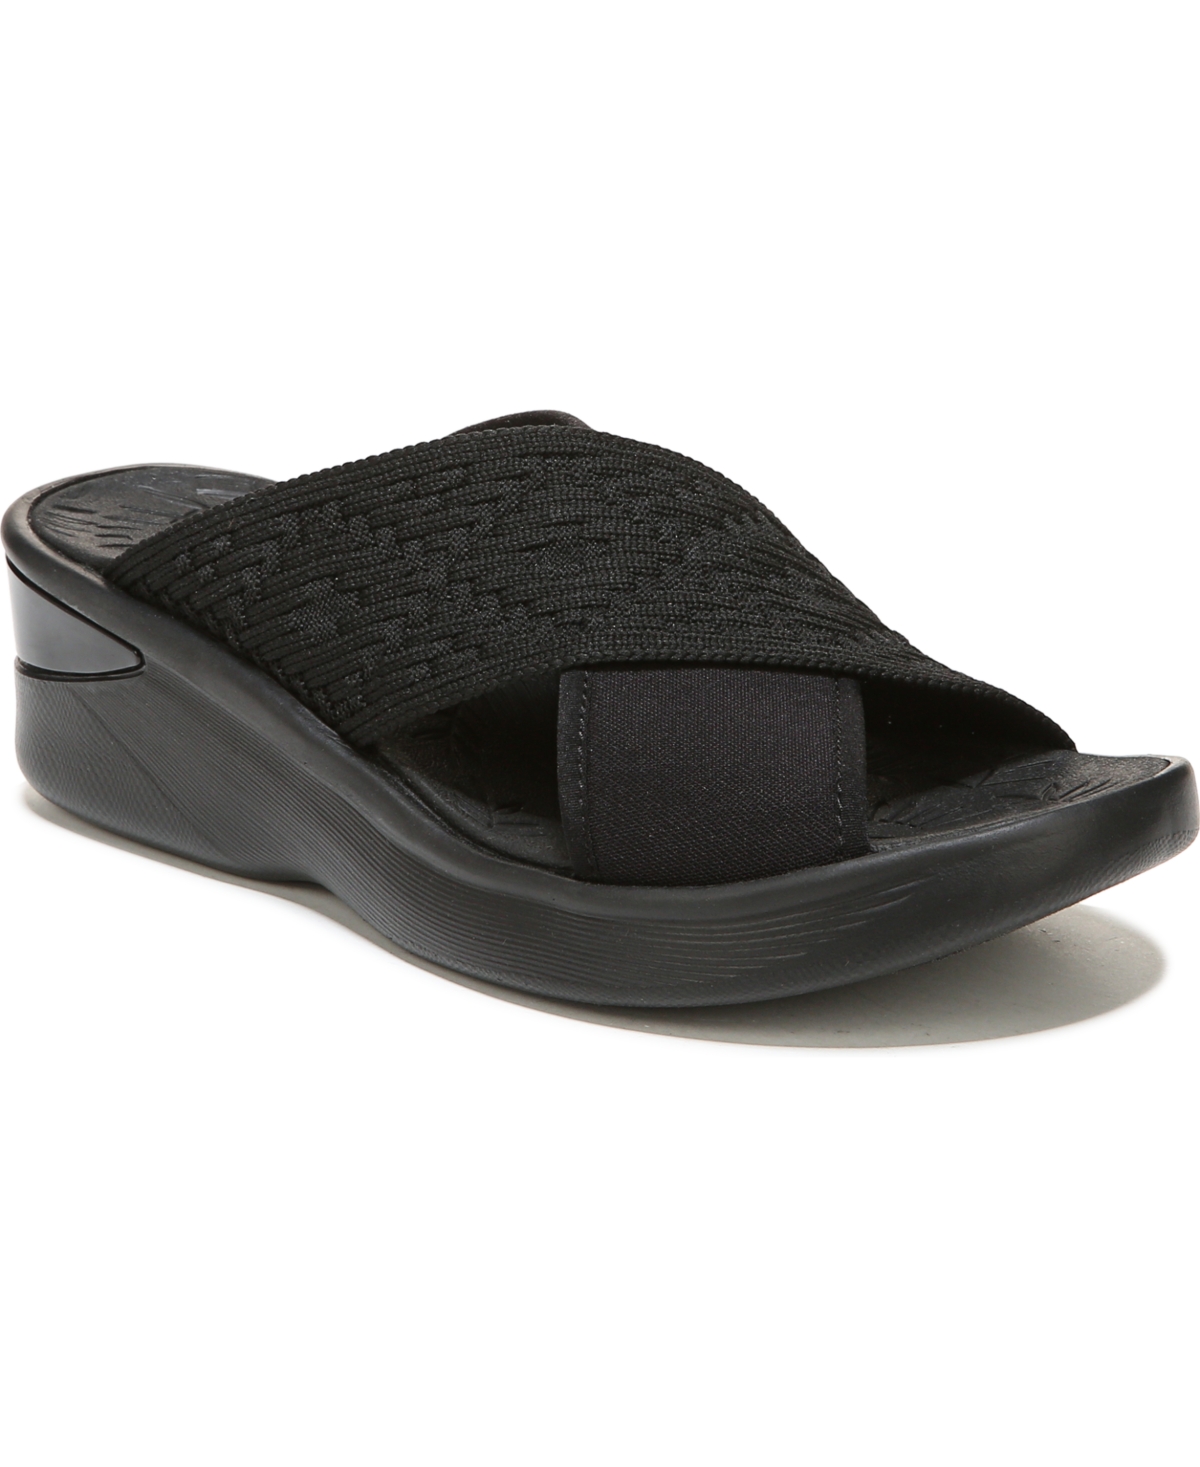 BZees Premium Sundance Washable Slide Sandals Women's Shoes